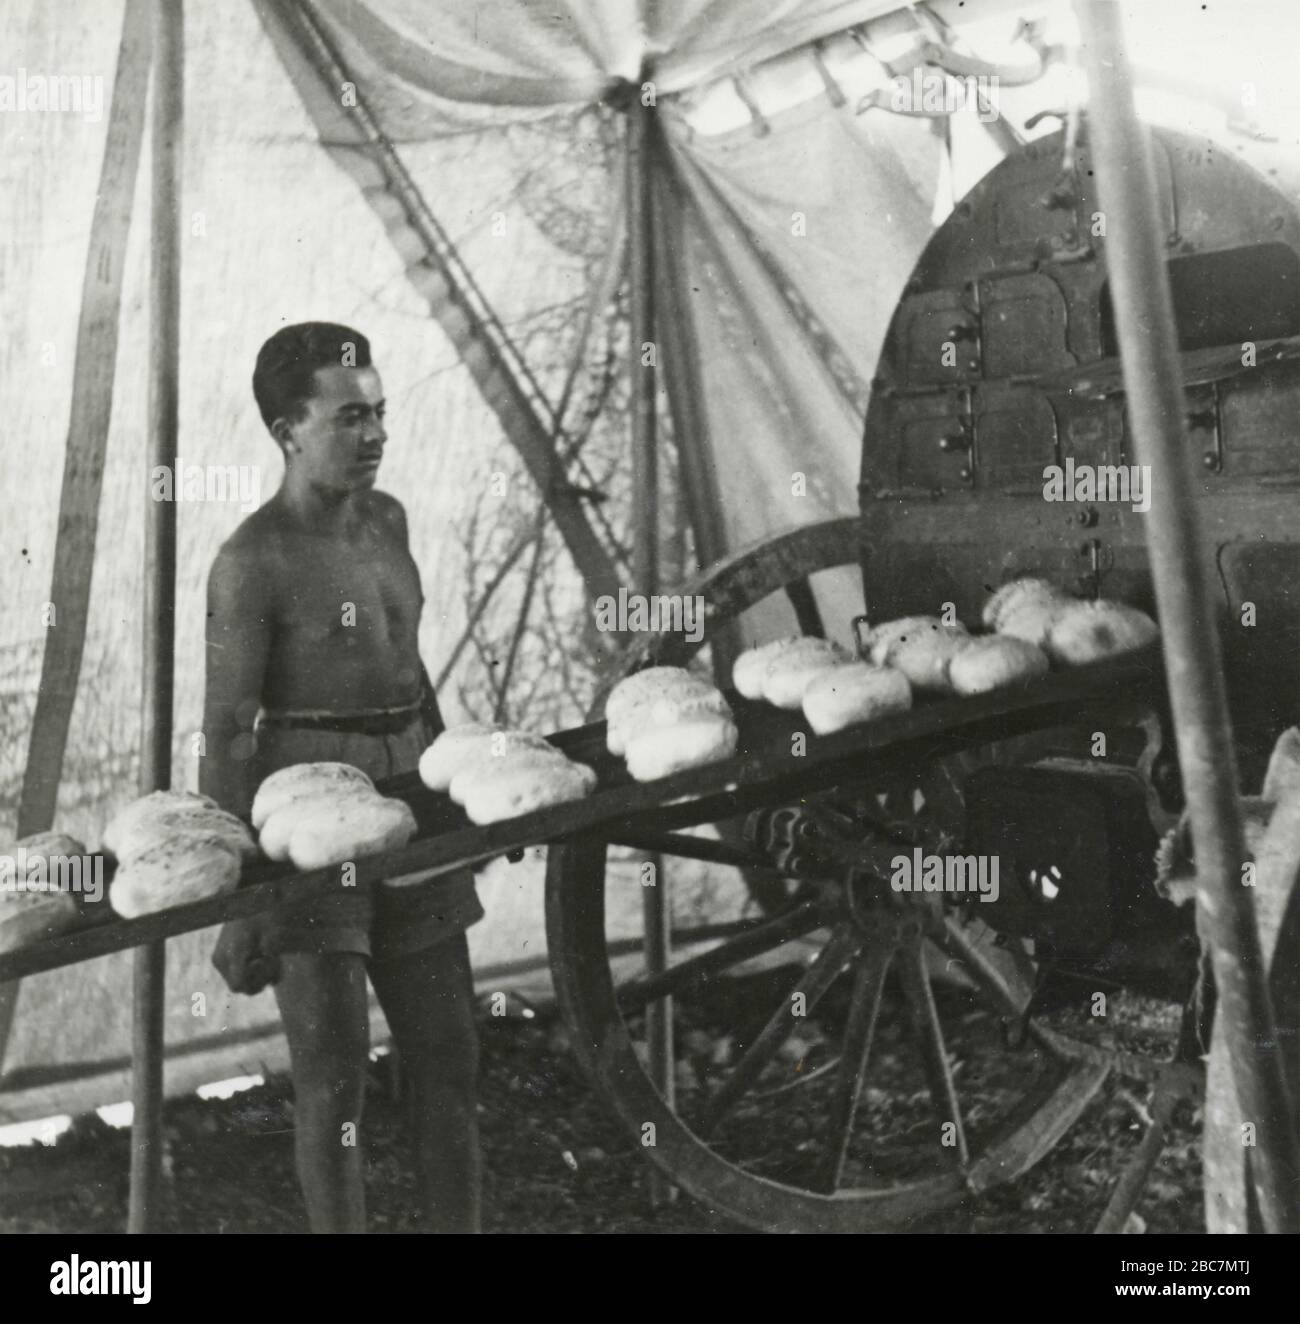 Pane di supporto militare dell'esercito reale italiano sul fronte di battaglia Libico, Tobruk, Libia 1941 Foto Stock